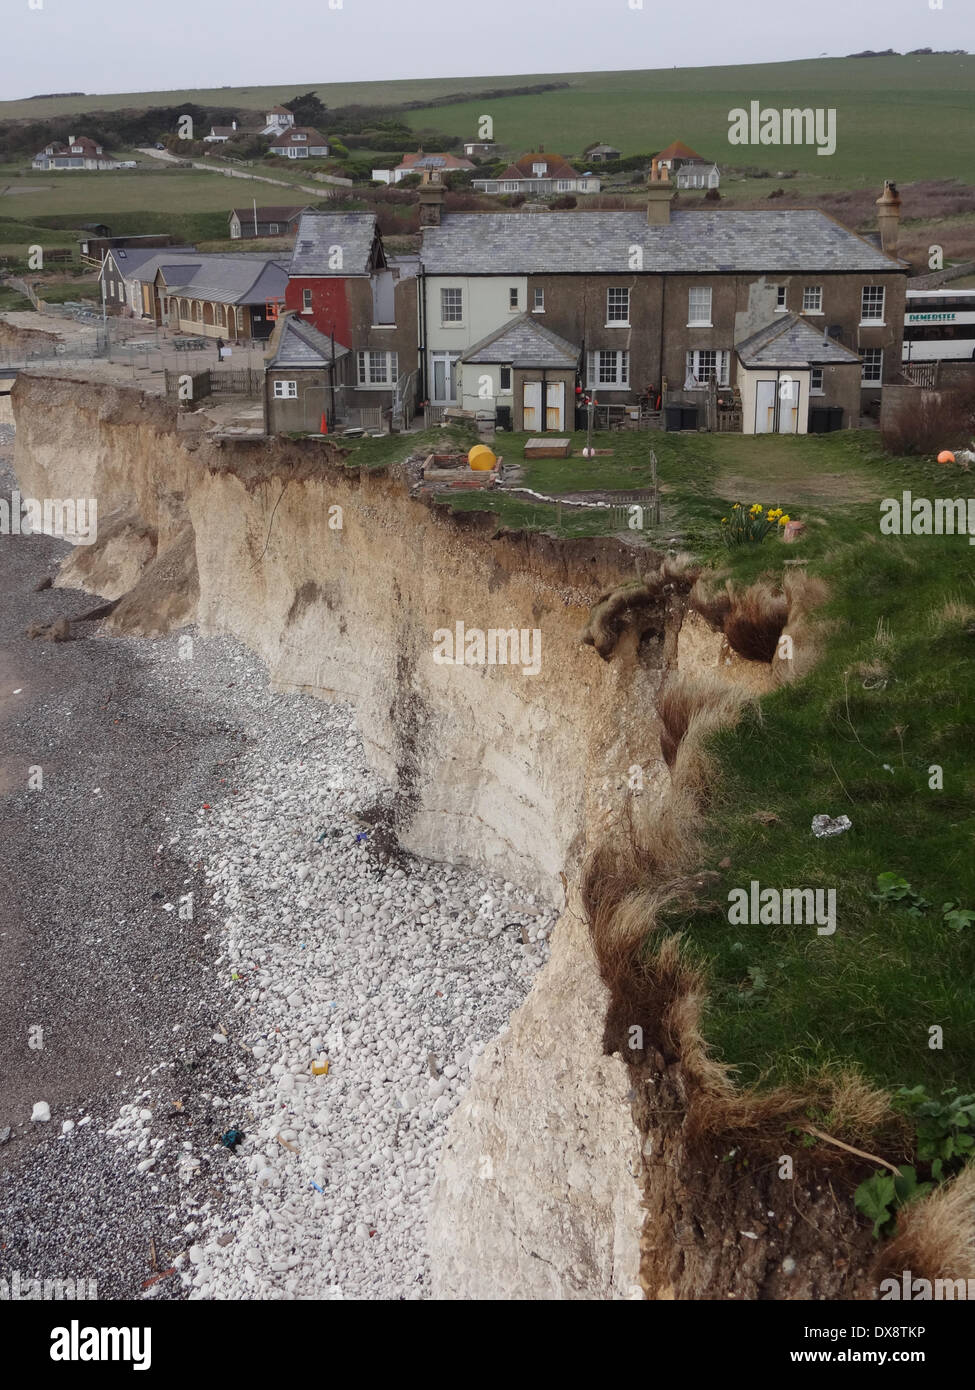 Birling Gap, East Sussex, Regno Unito. Il 20 marzo 2015. Le frane continuano lungo il chalk clifffs. Cottages in background. Demolizione giorno 3 vede due pareti contigue al cottage adiacenti tagliate e parte del tetto rimosso.David Burr/Alamy Live News Foto Stock